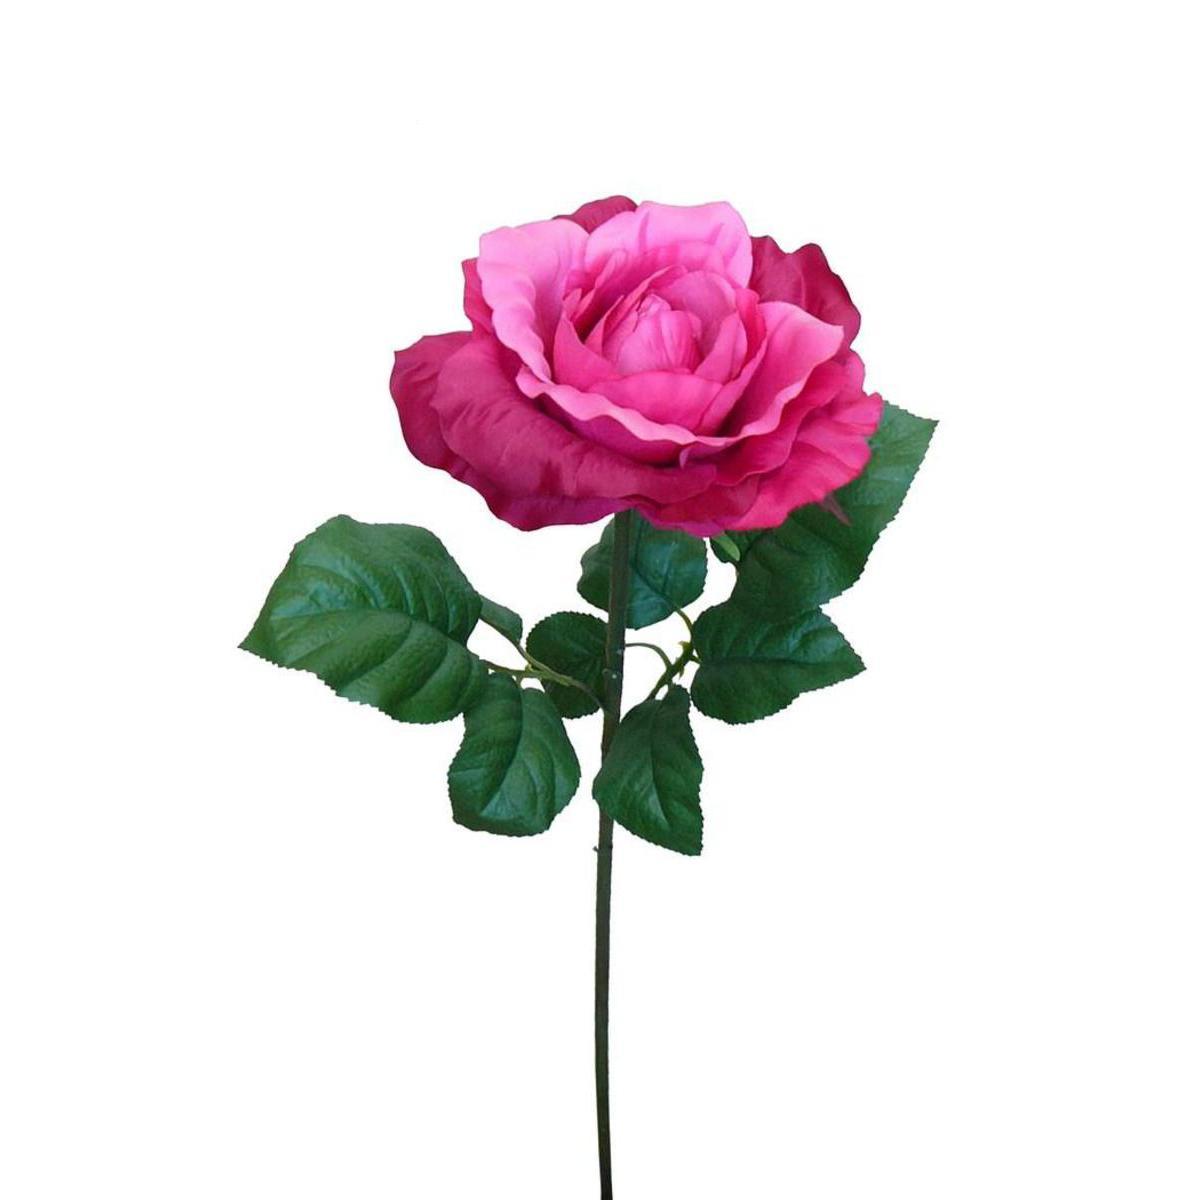 Tige rose géante de luxe - Polyester - H 103 cm - Rose